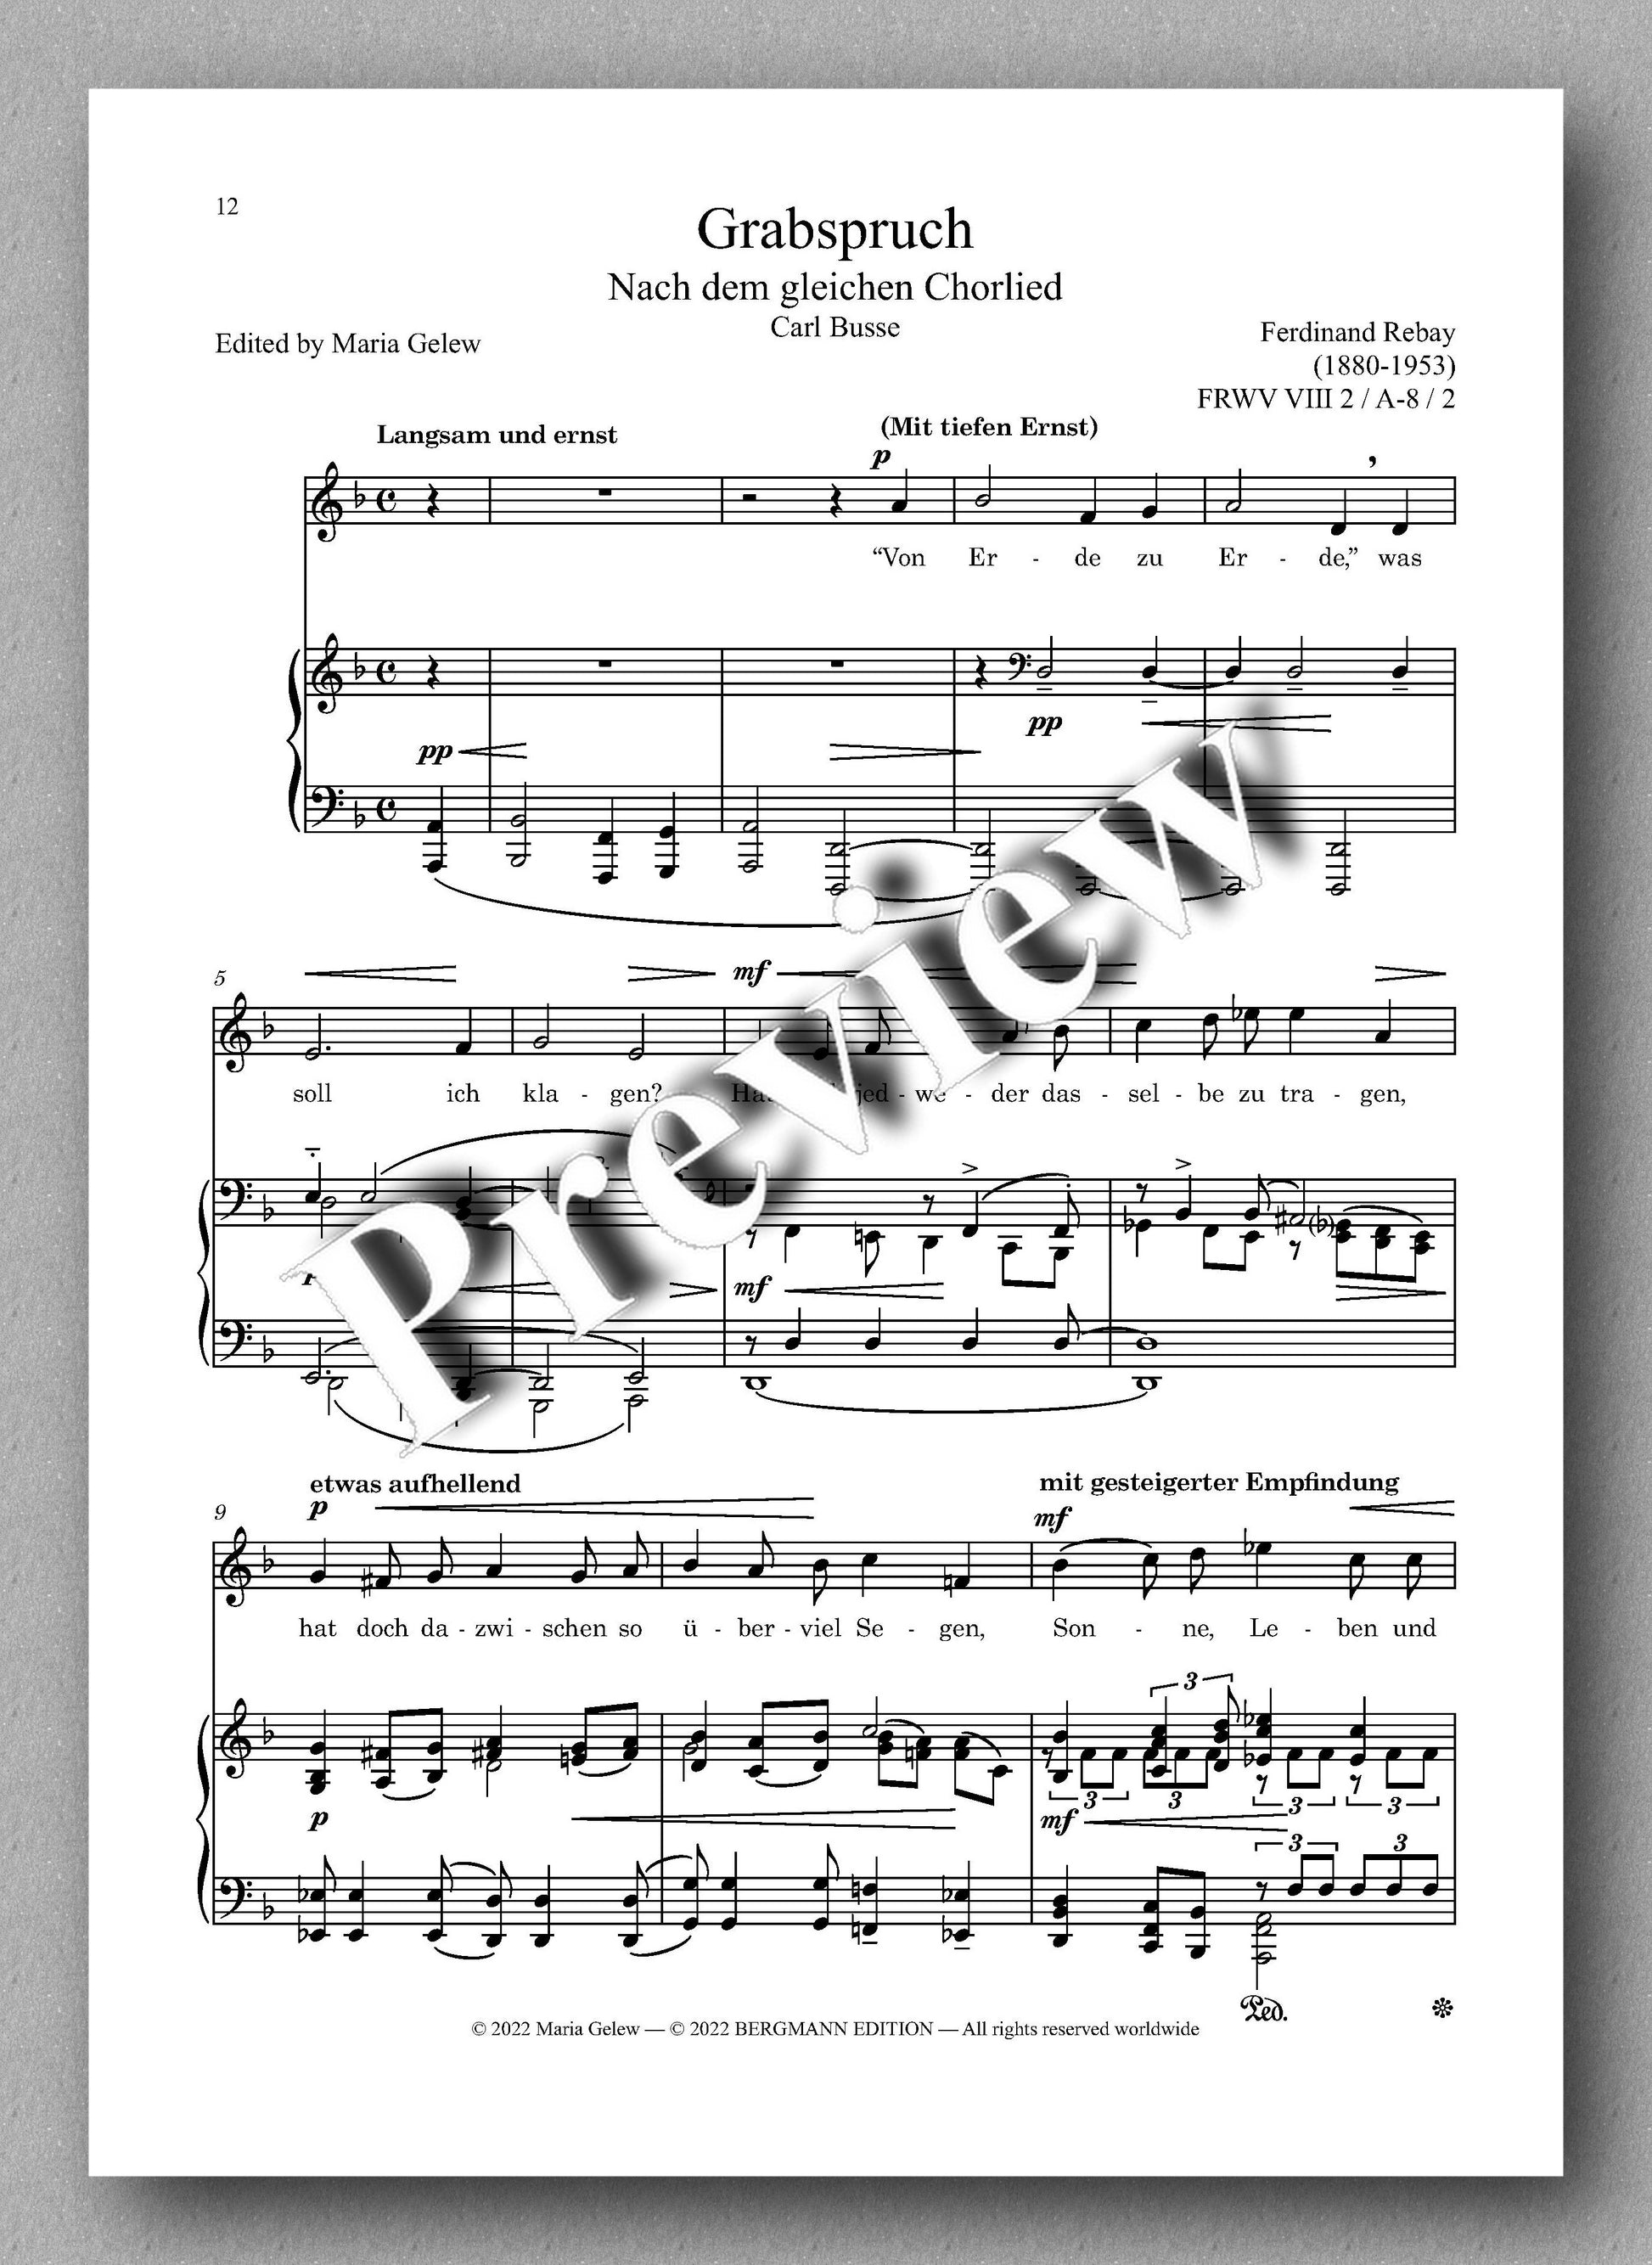 Ferdinand Rebay, Lieder nach Gedichten von Carl Busse und Max Bewer - preview of the music score 2